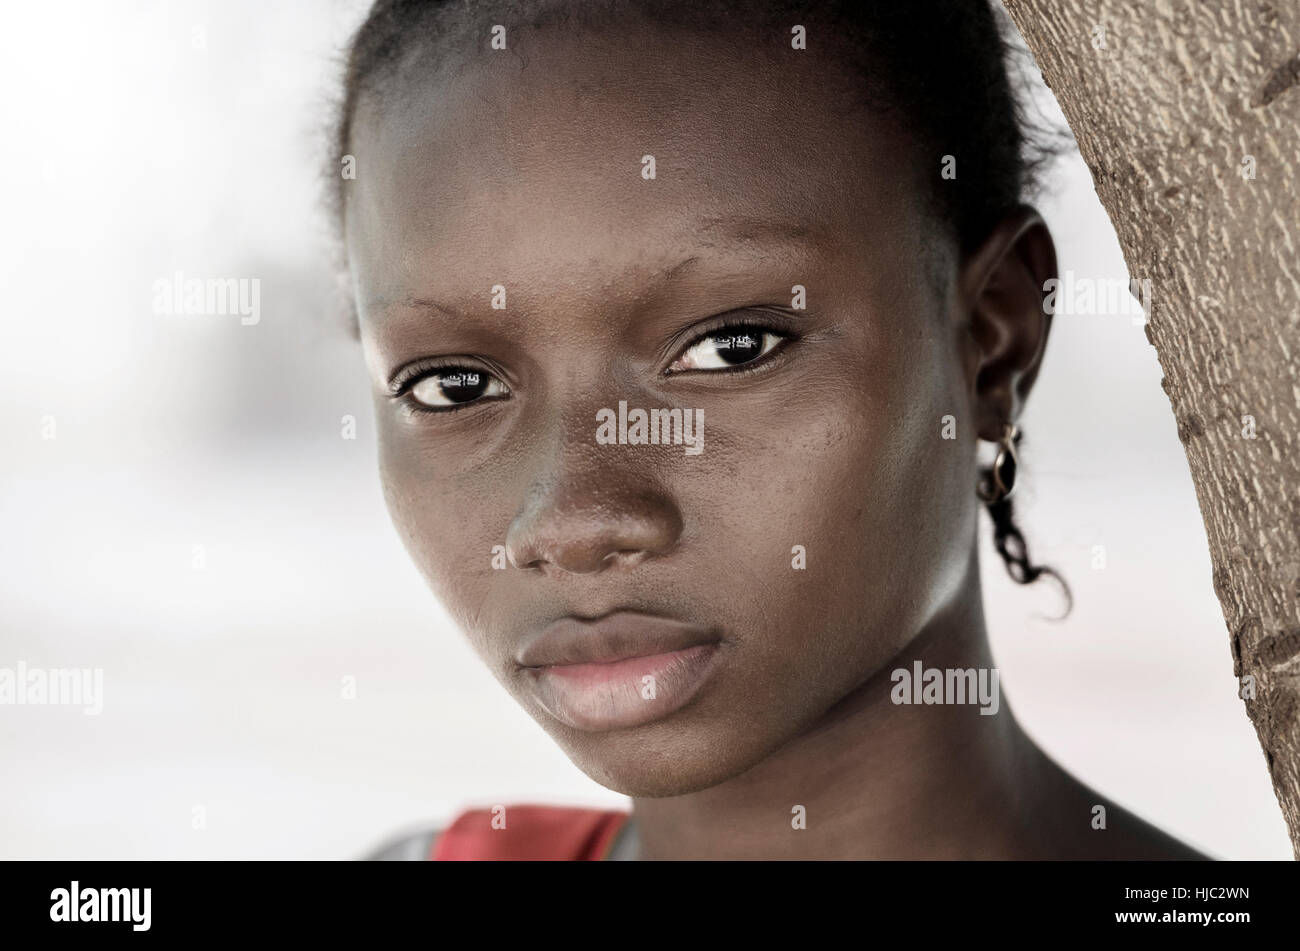 Traurigkeit Armut Symbol - Afrikanische schwarze Mädchen-Symbol. Nein zu Rassismus und Armut Hintergrund: Afrikanische schwarze Frau posiert für ein Mode-Shooting. Stockfoto